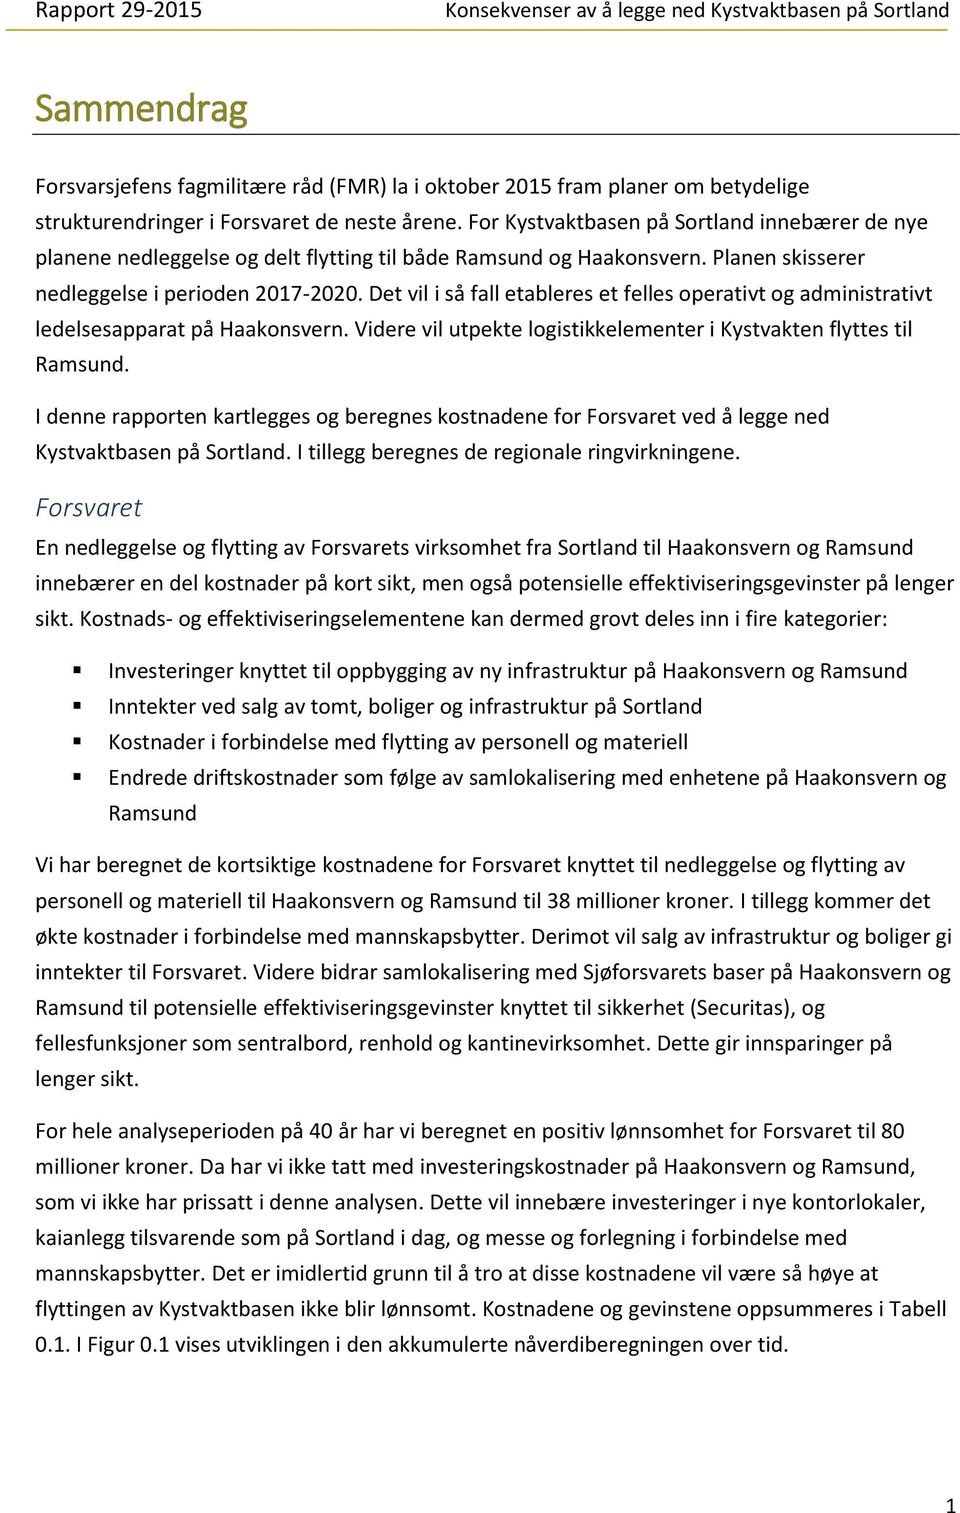 Det vil i så fall etableres et felles operativt og administrativt ledelsesapparat på Haakonsvern. Videre vil utpekte logistikkelementer i Kystvakten flyttes til Ramsund.